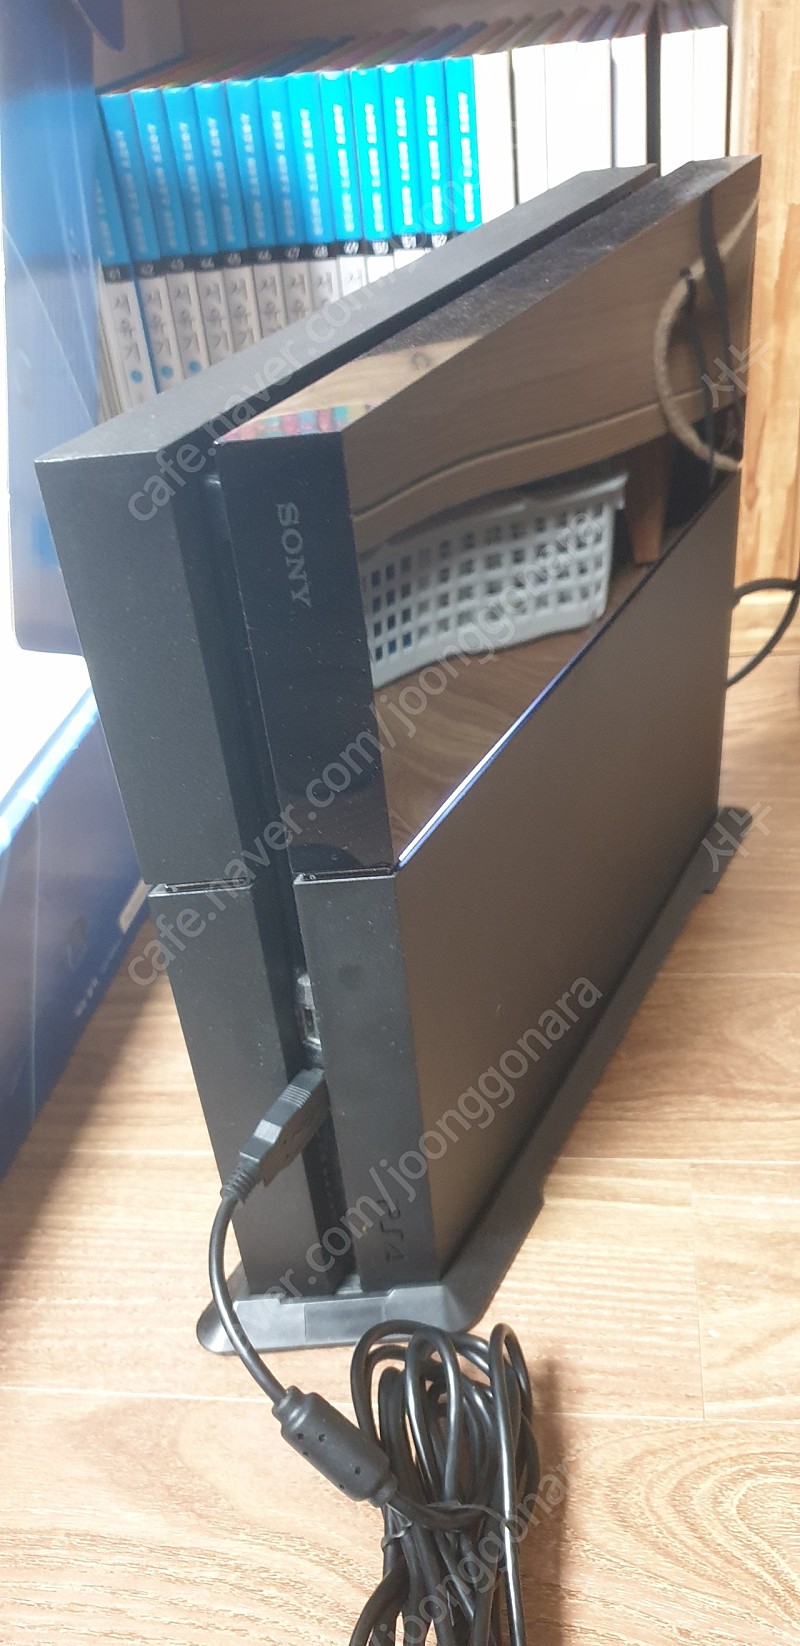 PS4 1005A 500GB, 추가패드, 호리 패드, 타이틀2개, 충전거치대 외